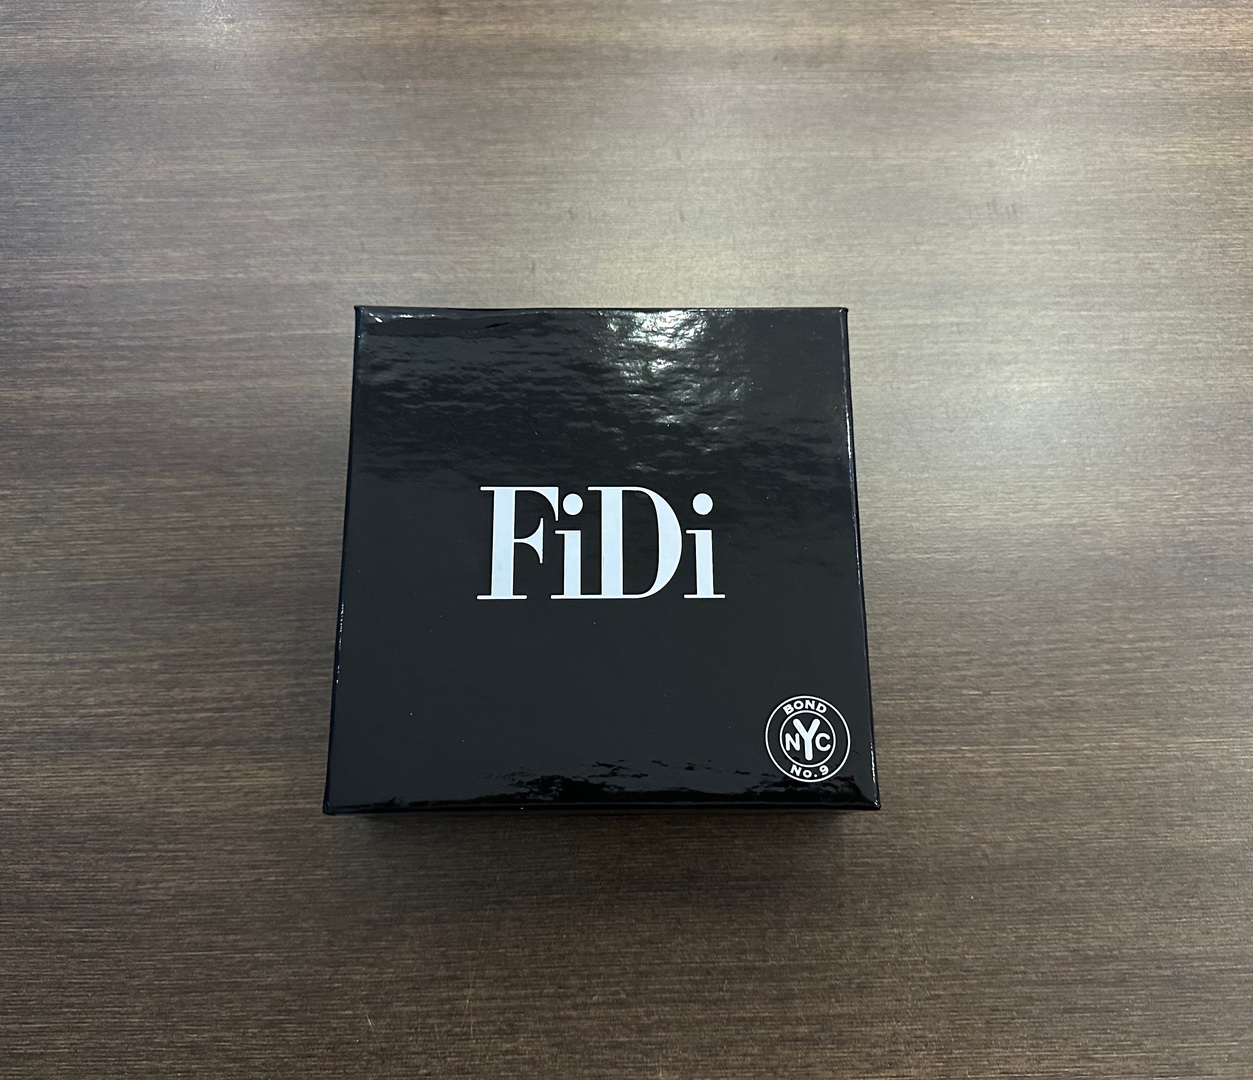 joyas, relojes y accesorios - Perfume FiDi Bond NO.9 NYC Nuevo 100% Original RD$ 15,900 NEG 1